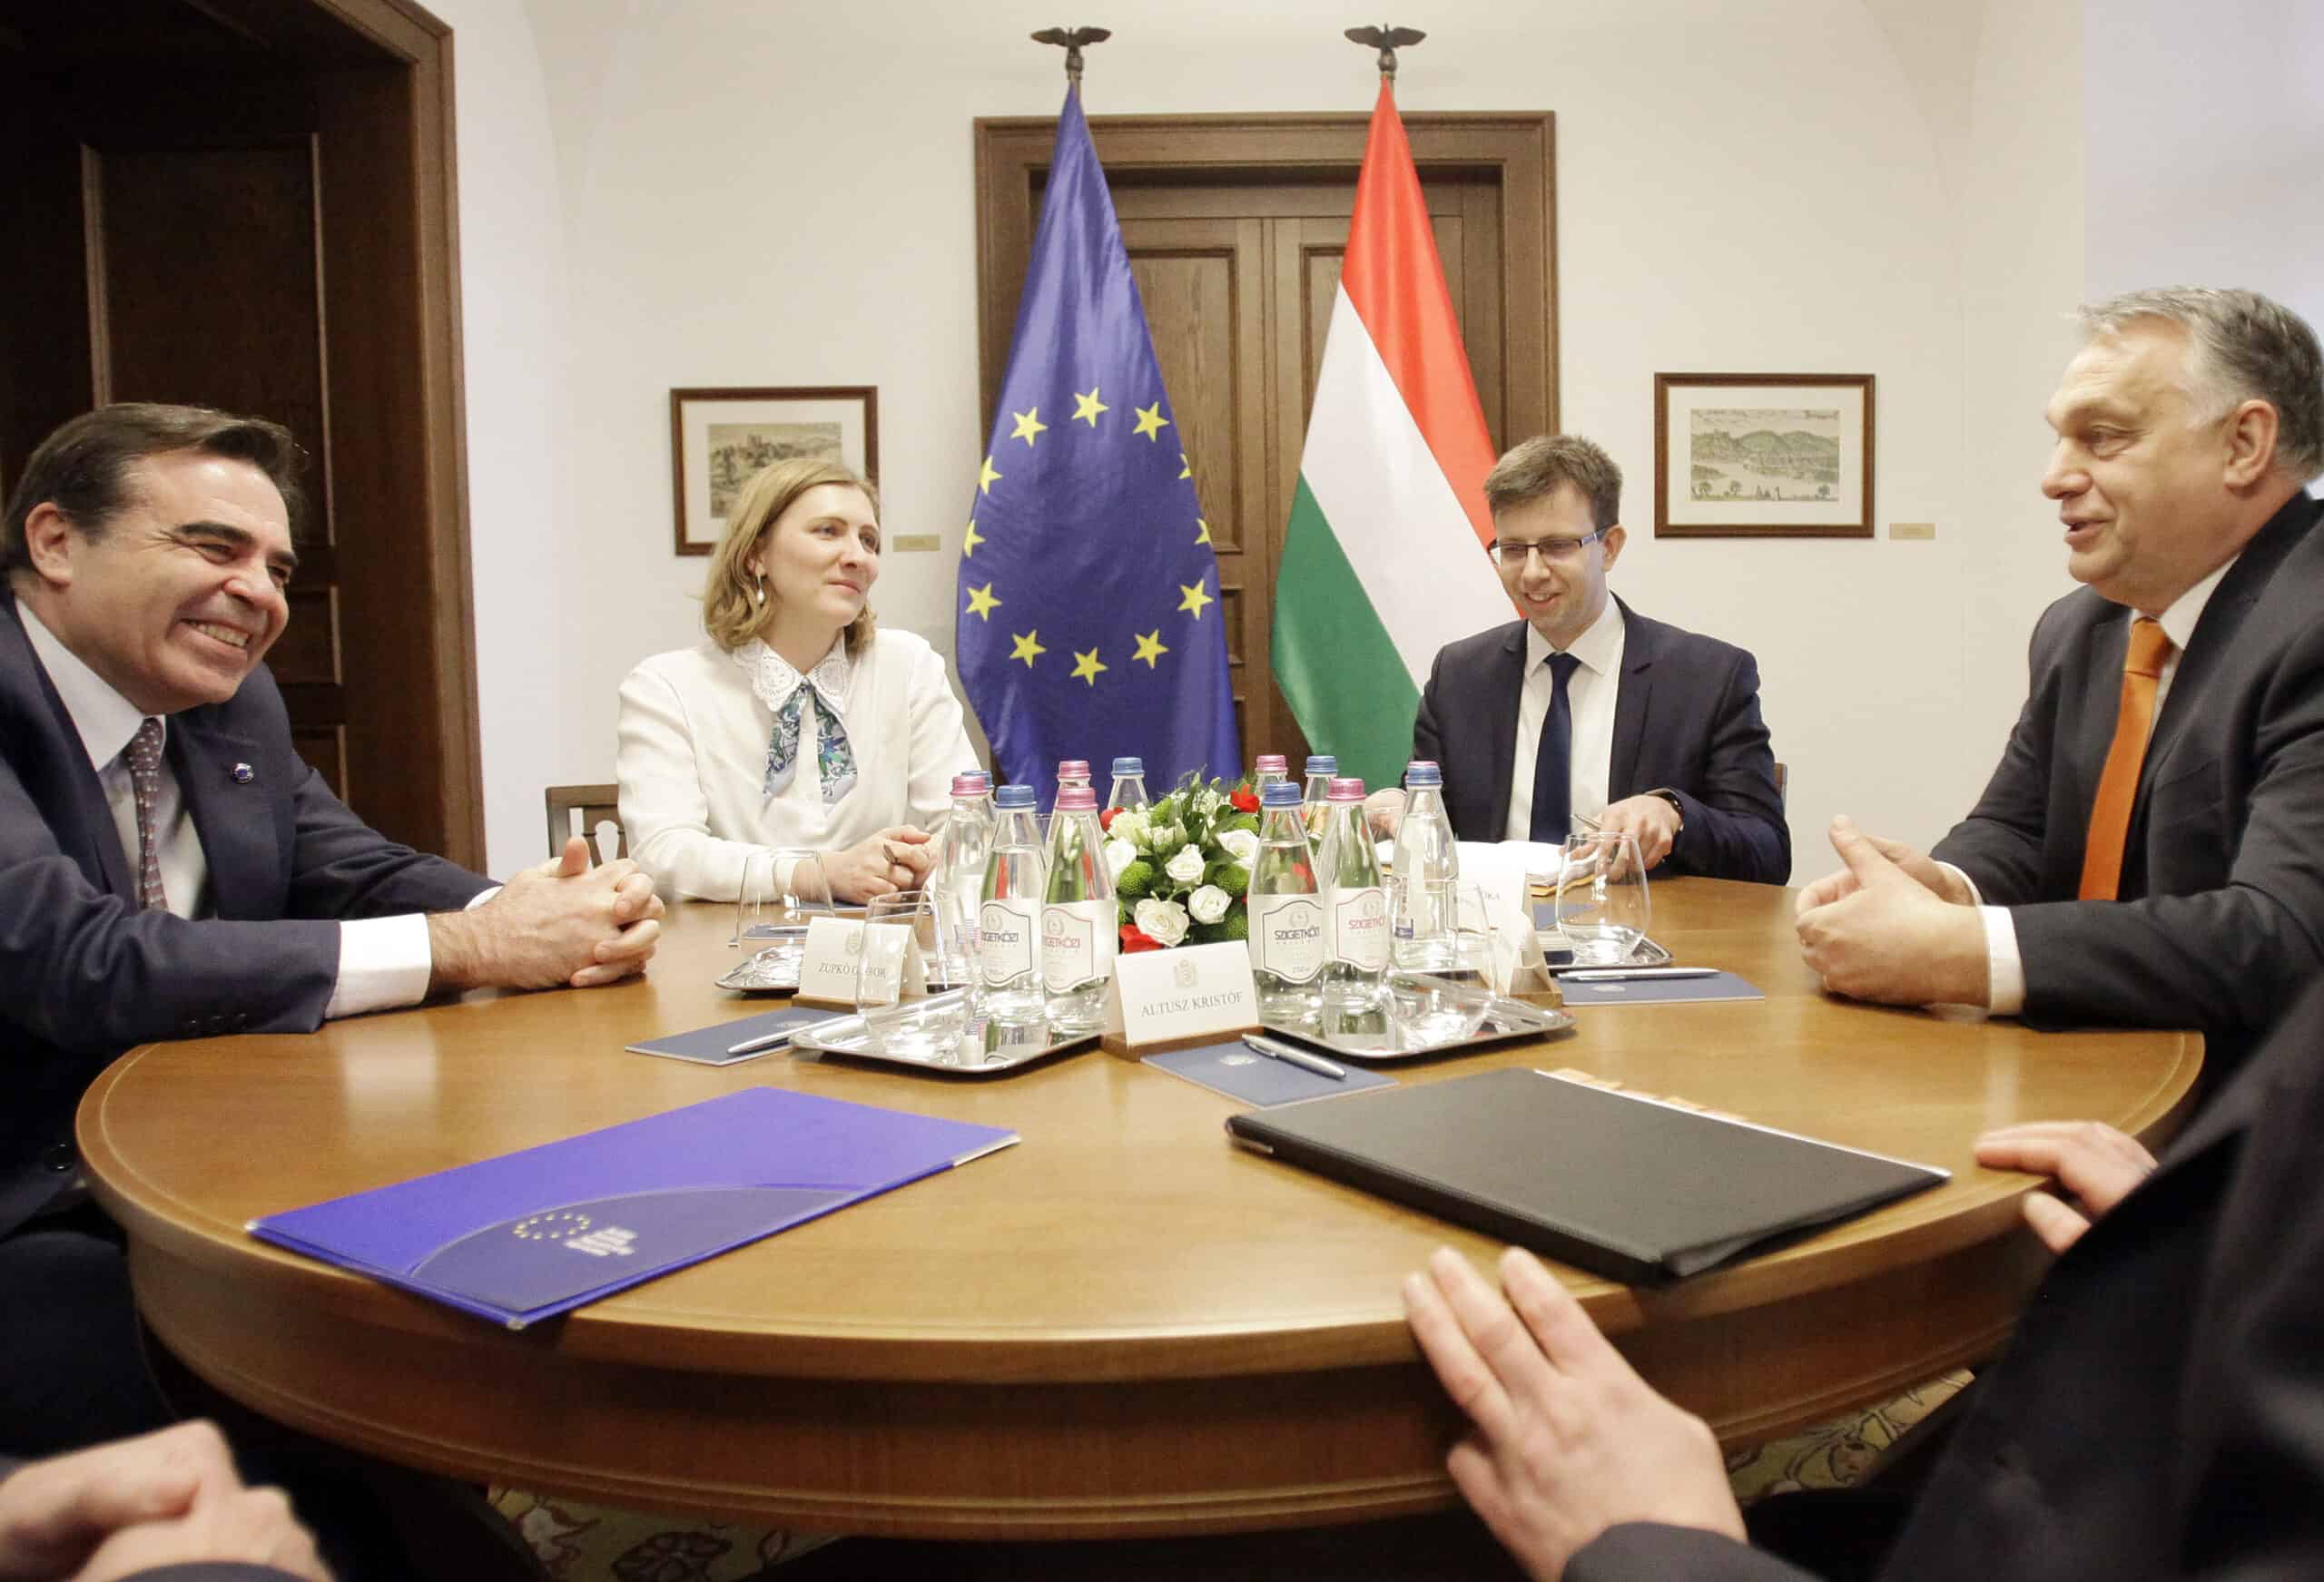 Přečtete si více ze článku Jak se vyvíjí vztah EU a Maďarska?